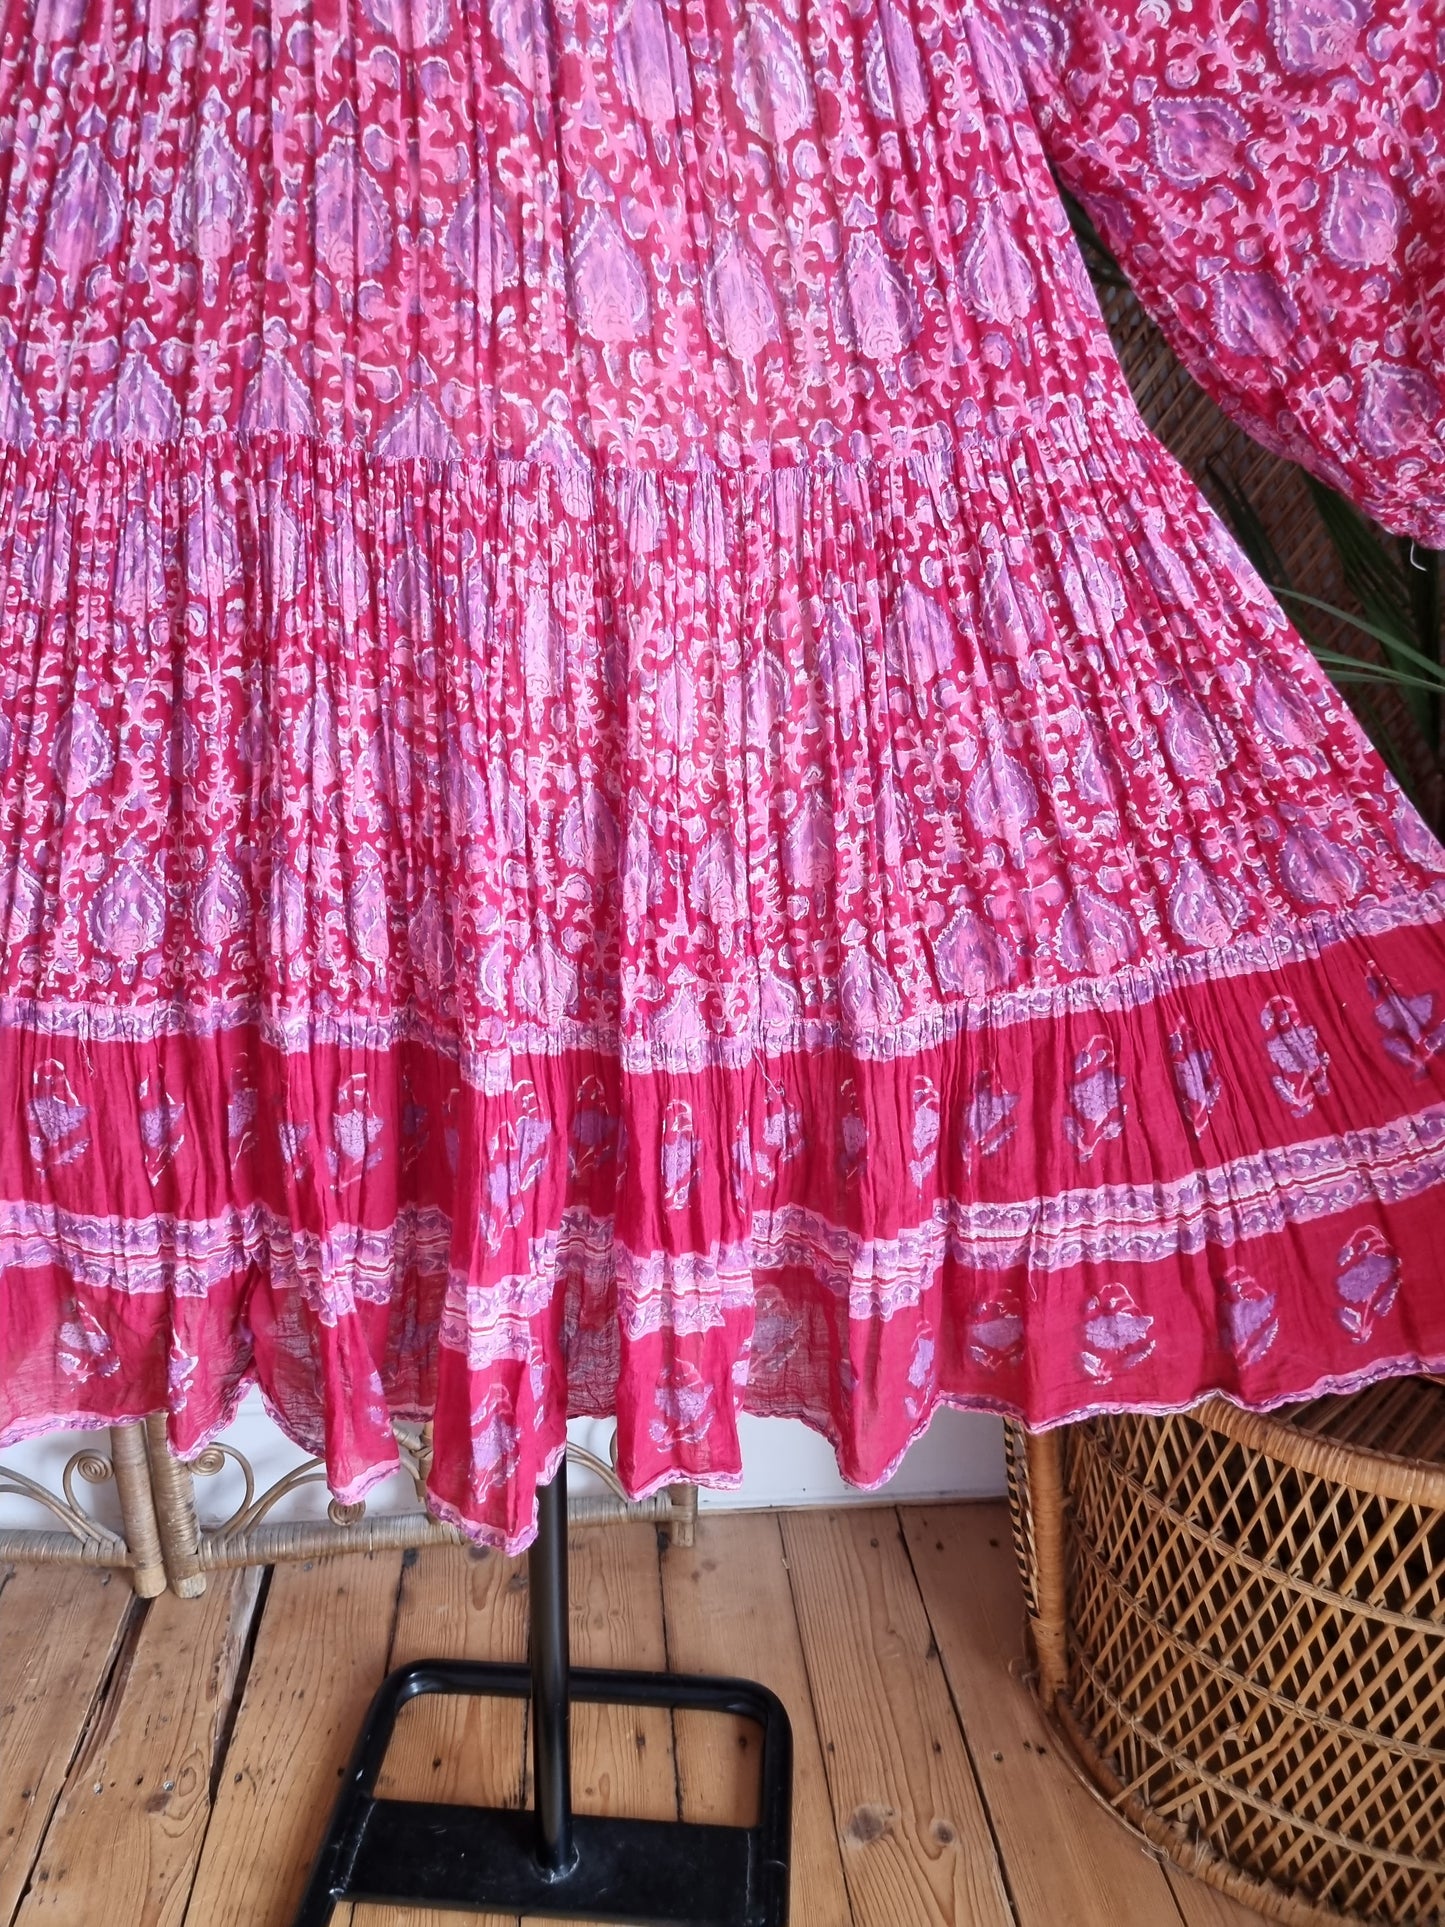 Vintage Indian dress